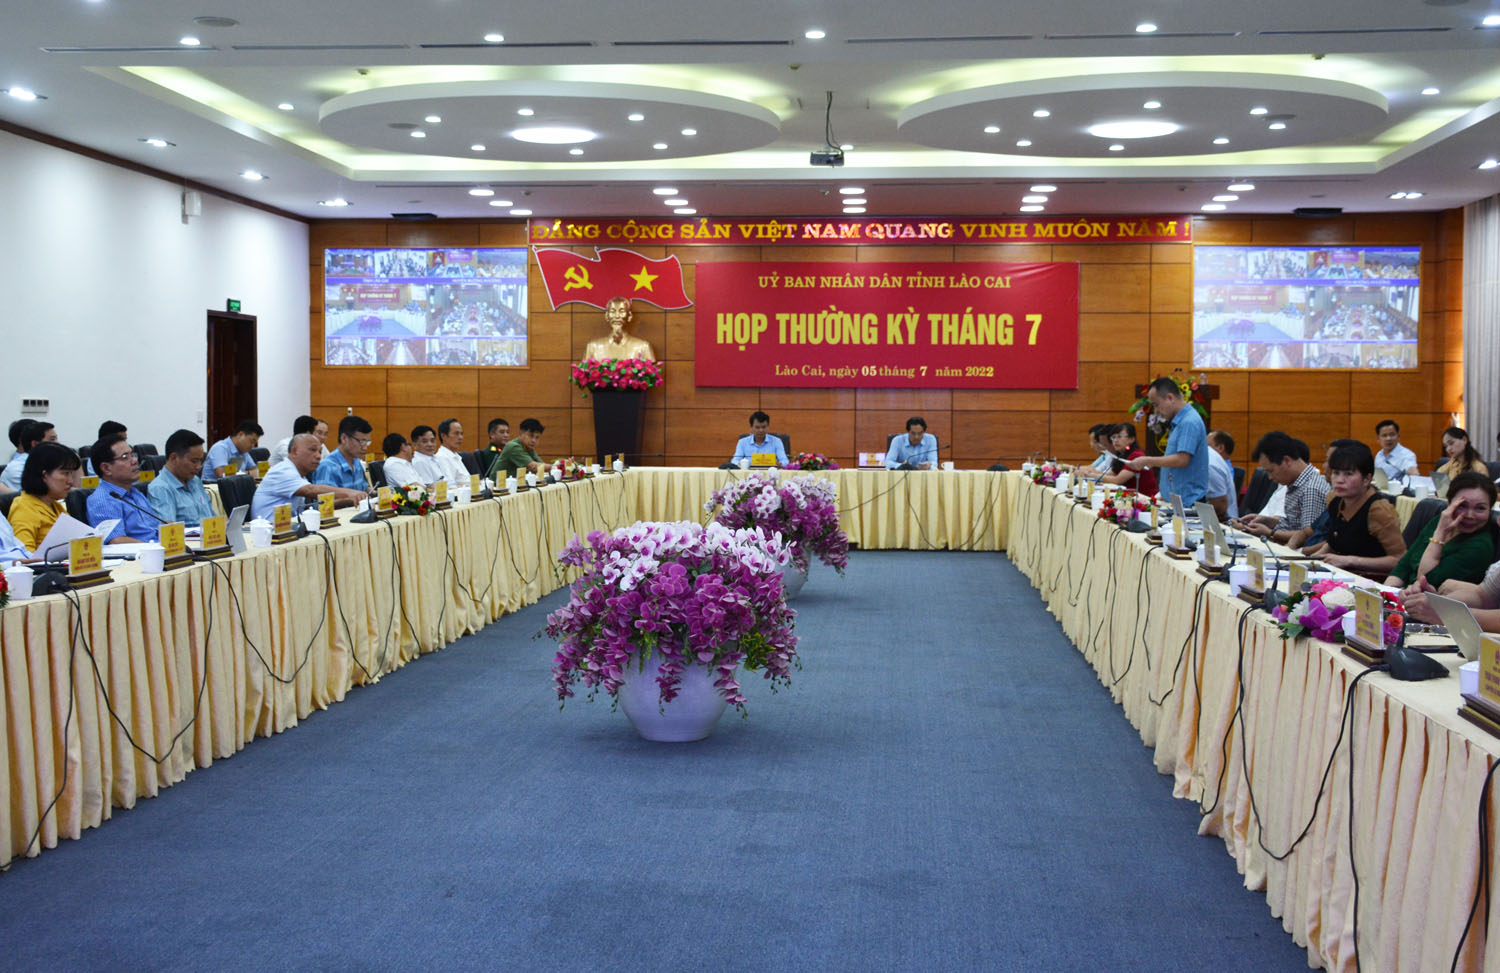 Một cuộc họp thường kỳ của Ủy ban nhân dân tỉnh Lào Cai